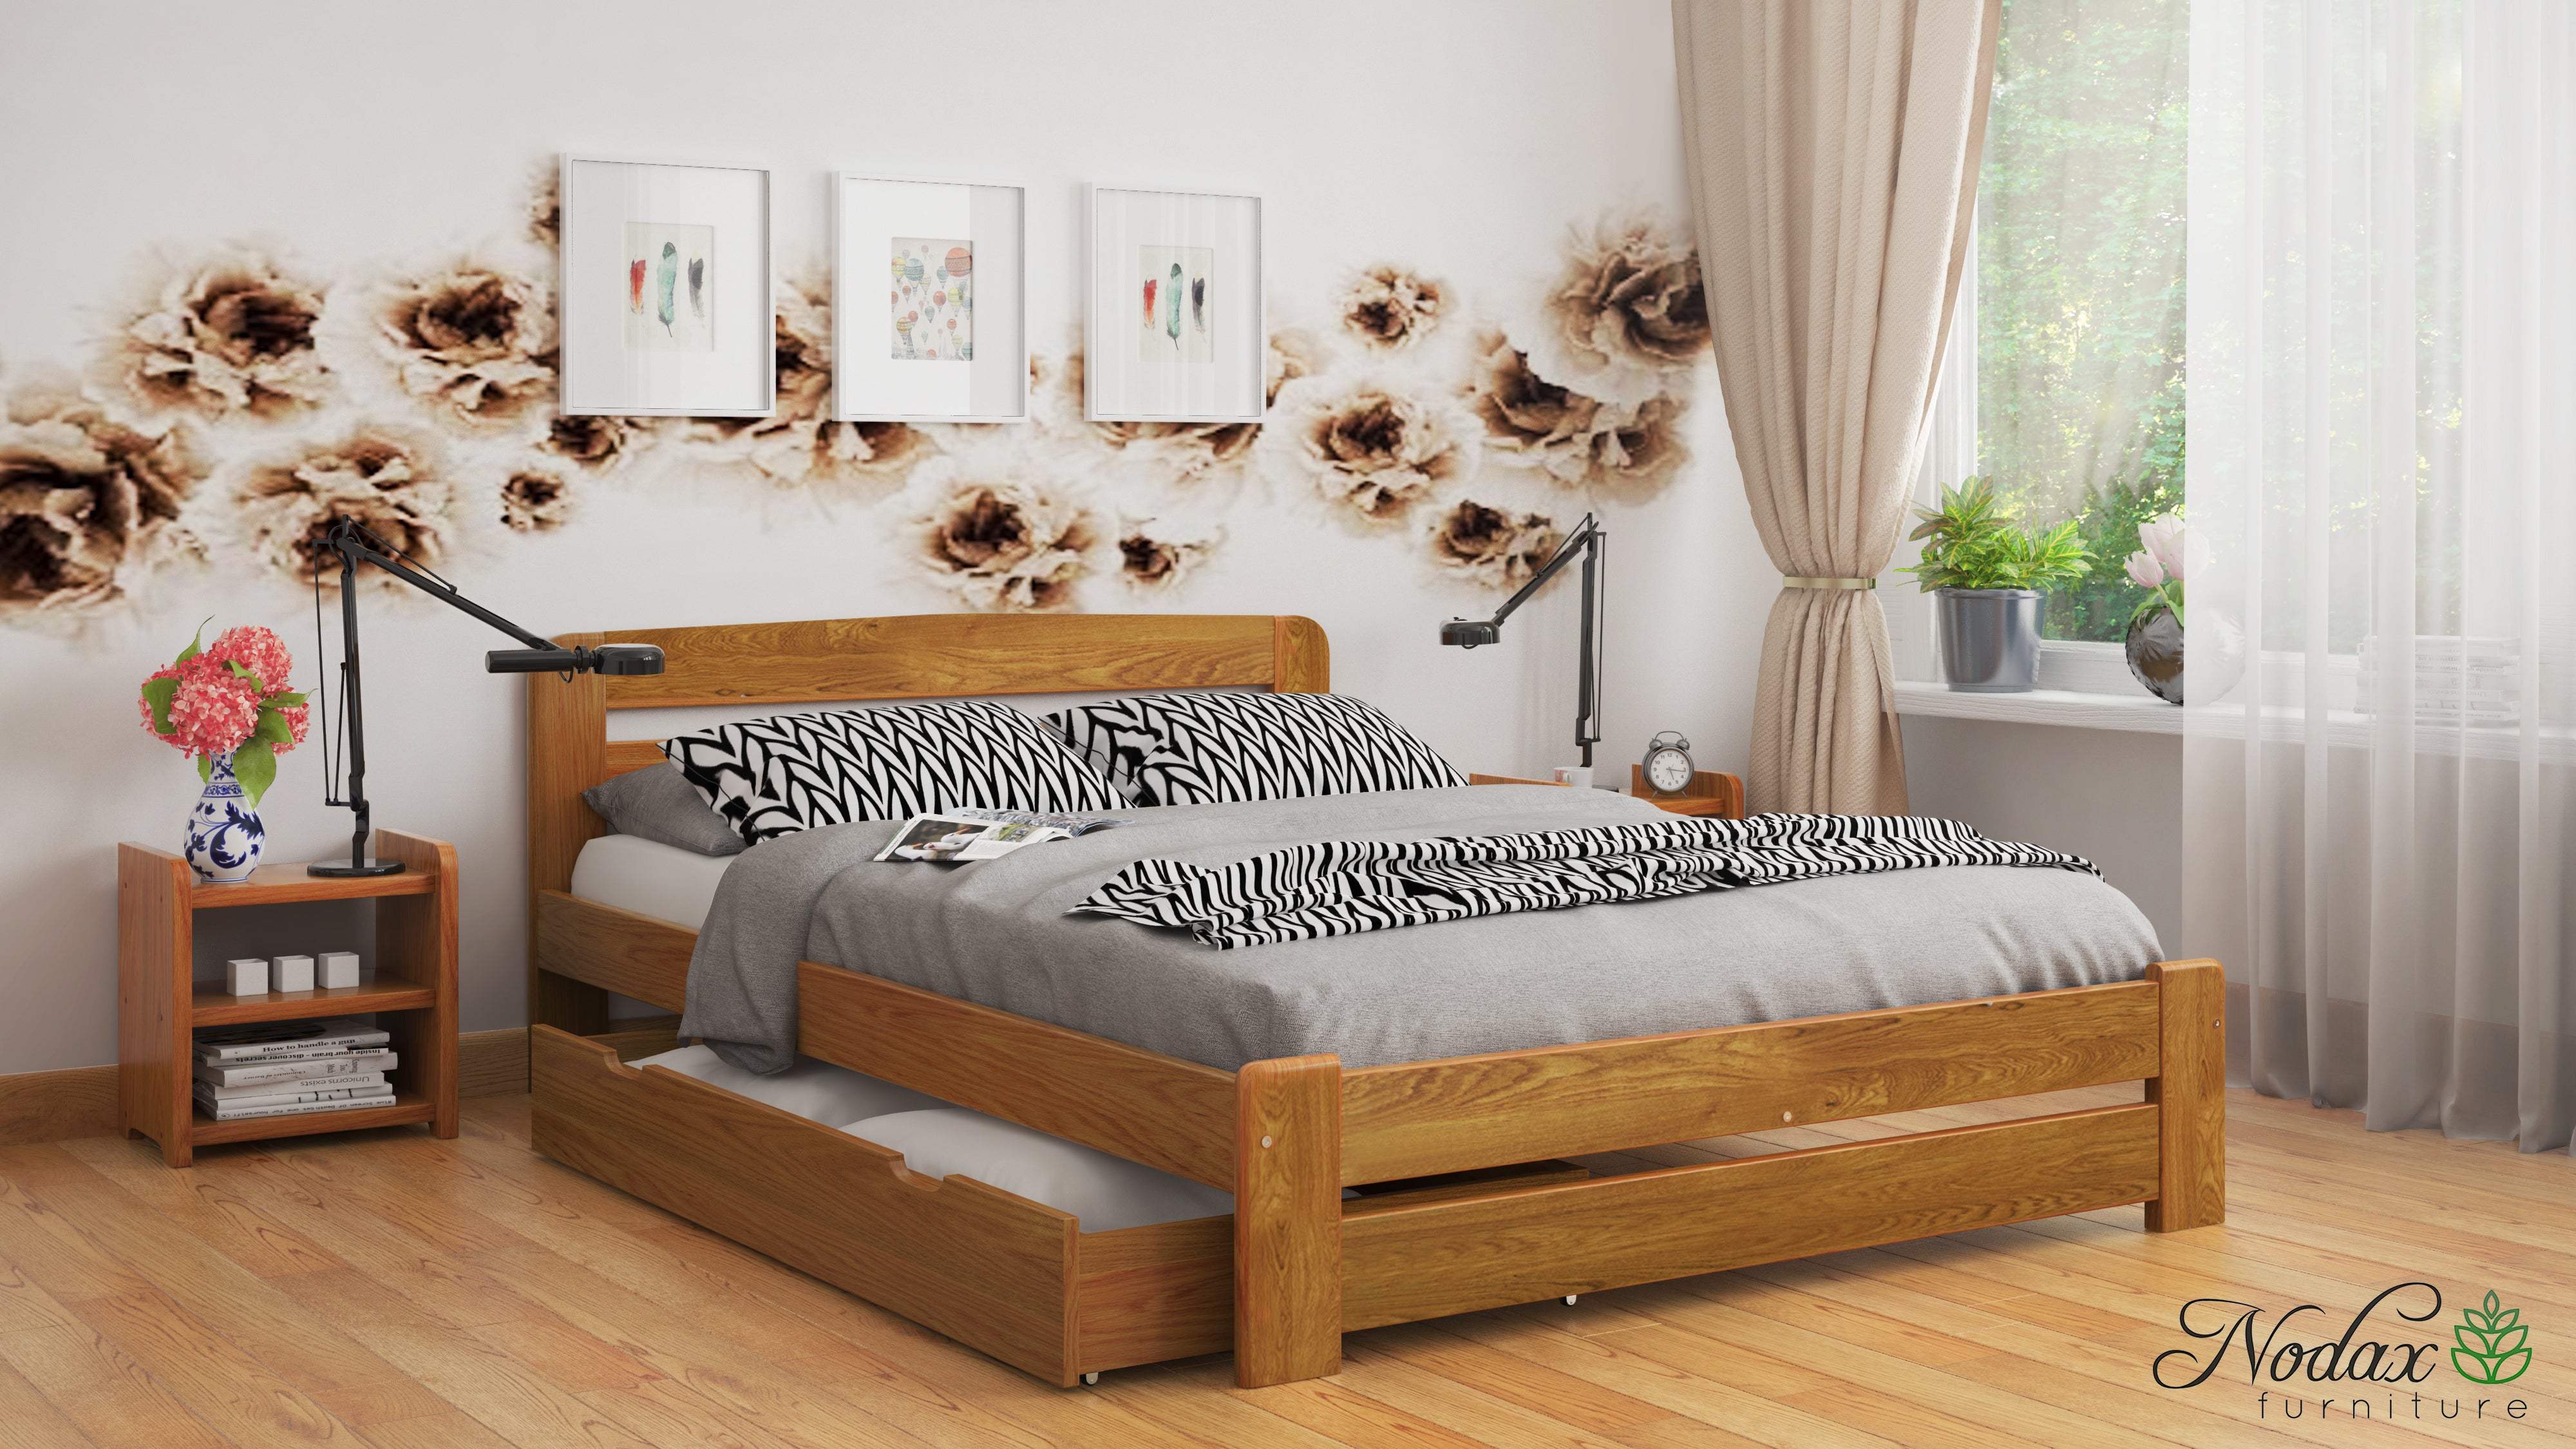 Wooden-bed-frame-Aurora-beds-online-drawer